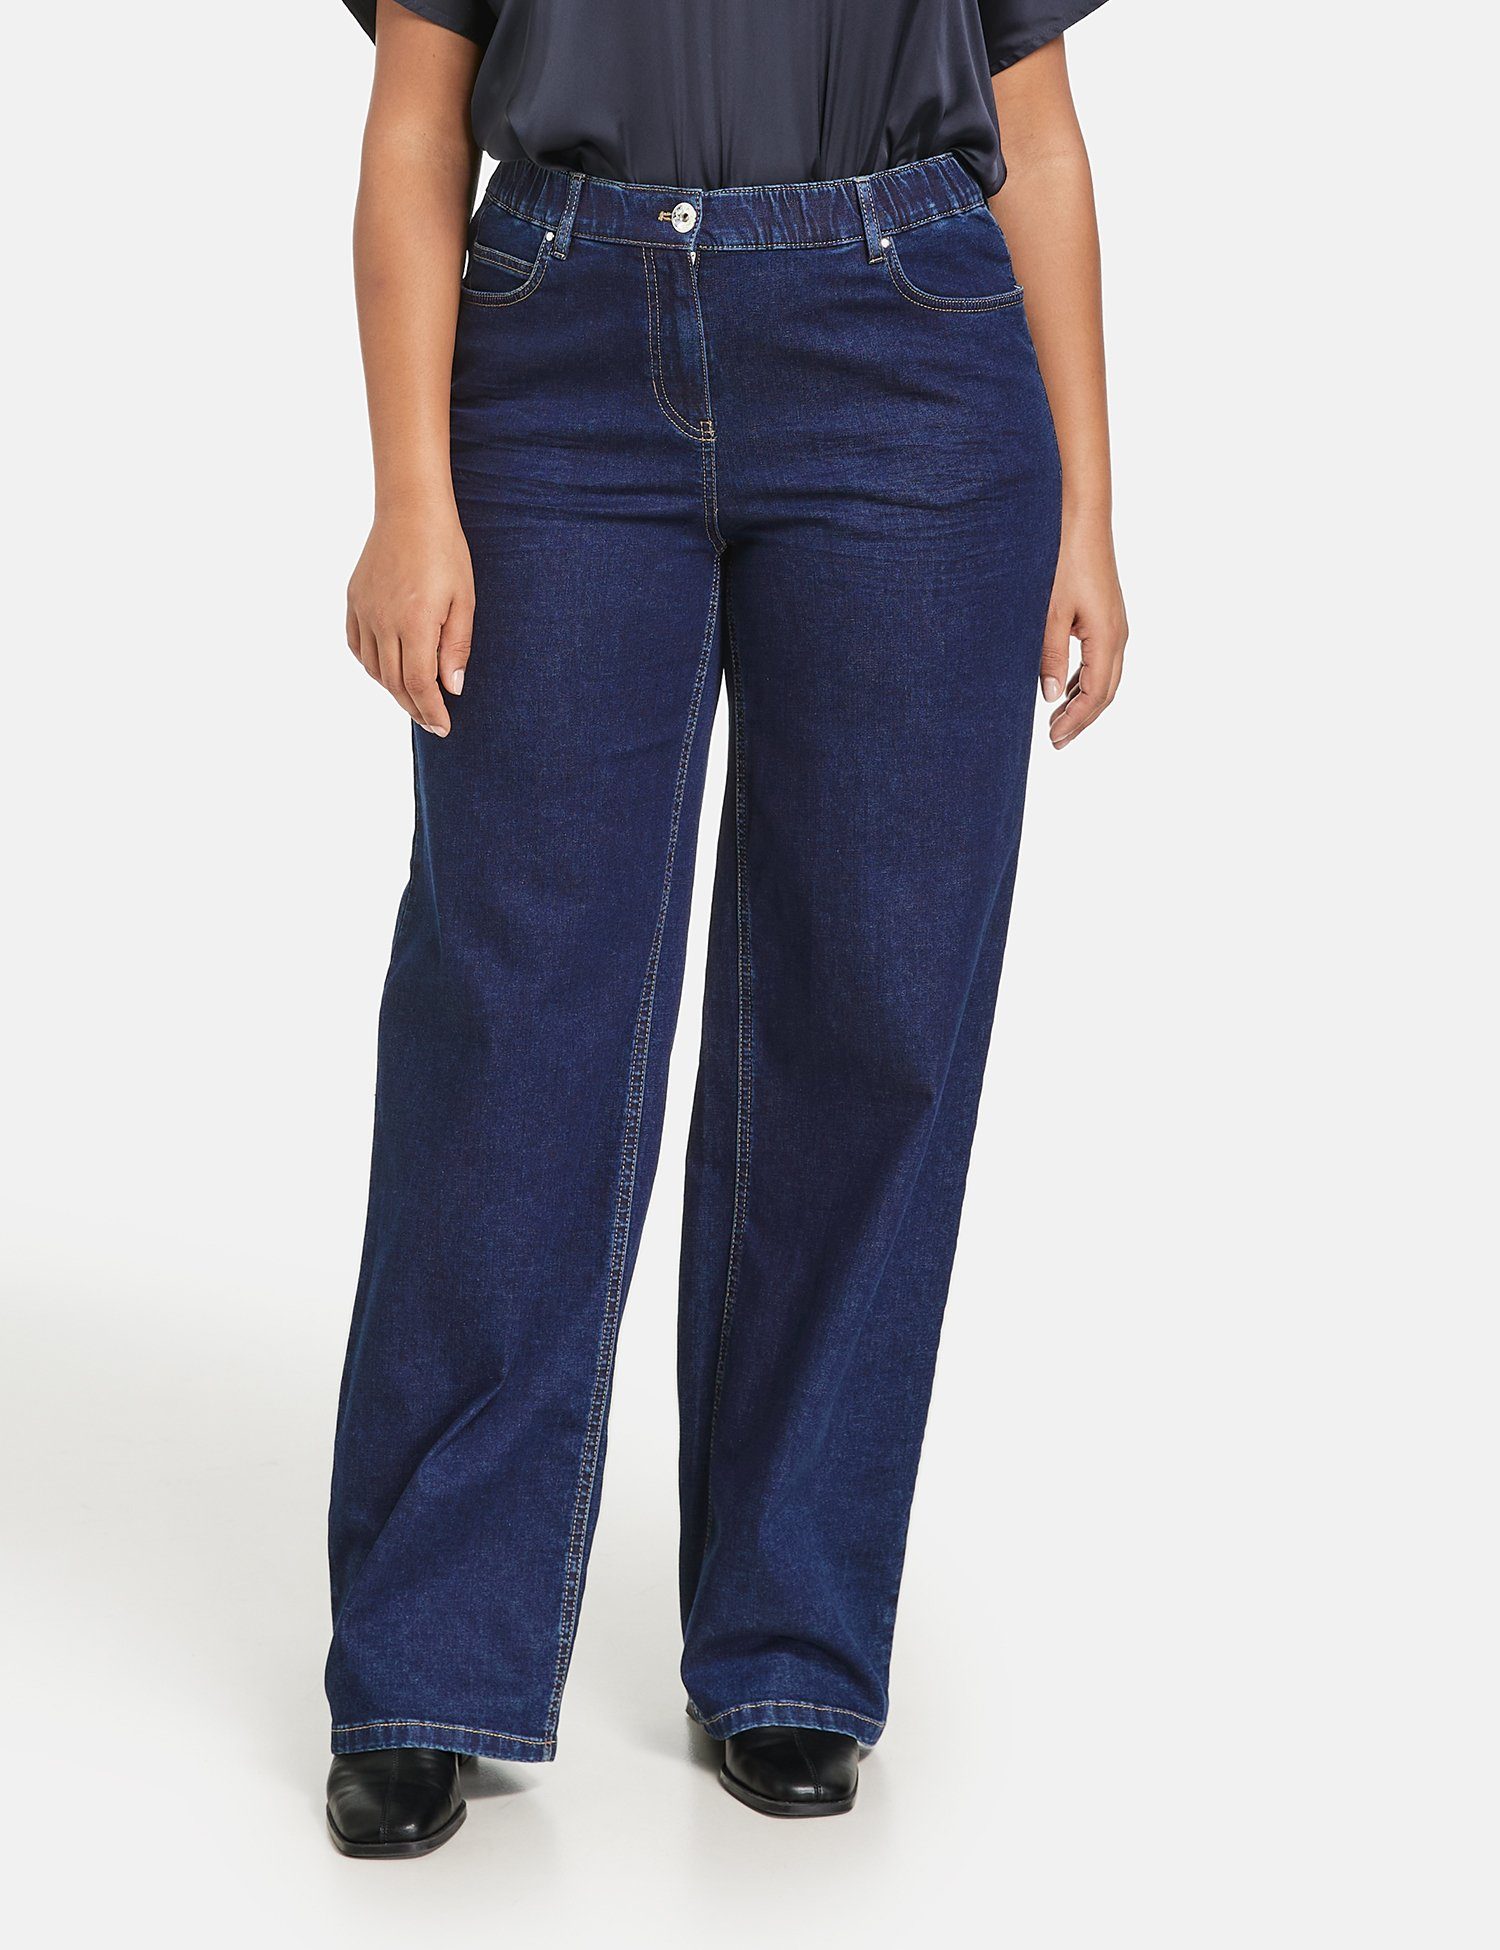 Jeans mit Carlotta Samoon weitem Bein Stretch-Jeans